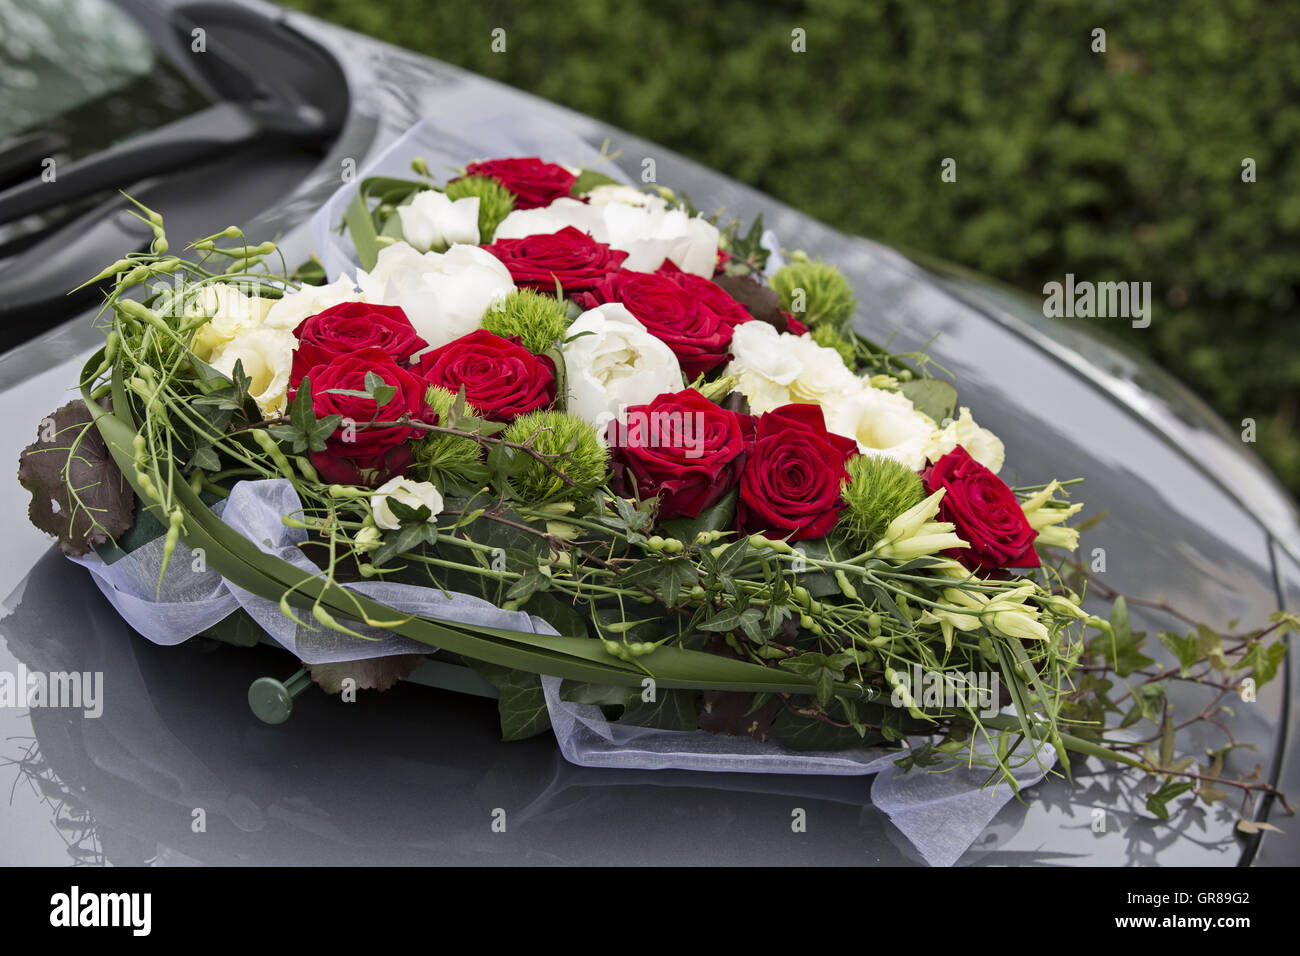 Sposa Heart-Shaped auto bouquet di rose bianche e rosse sulla vettura di colore grigio Foto Stock